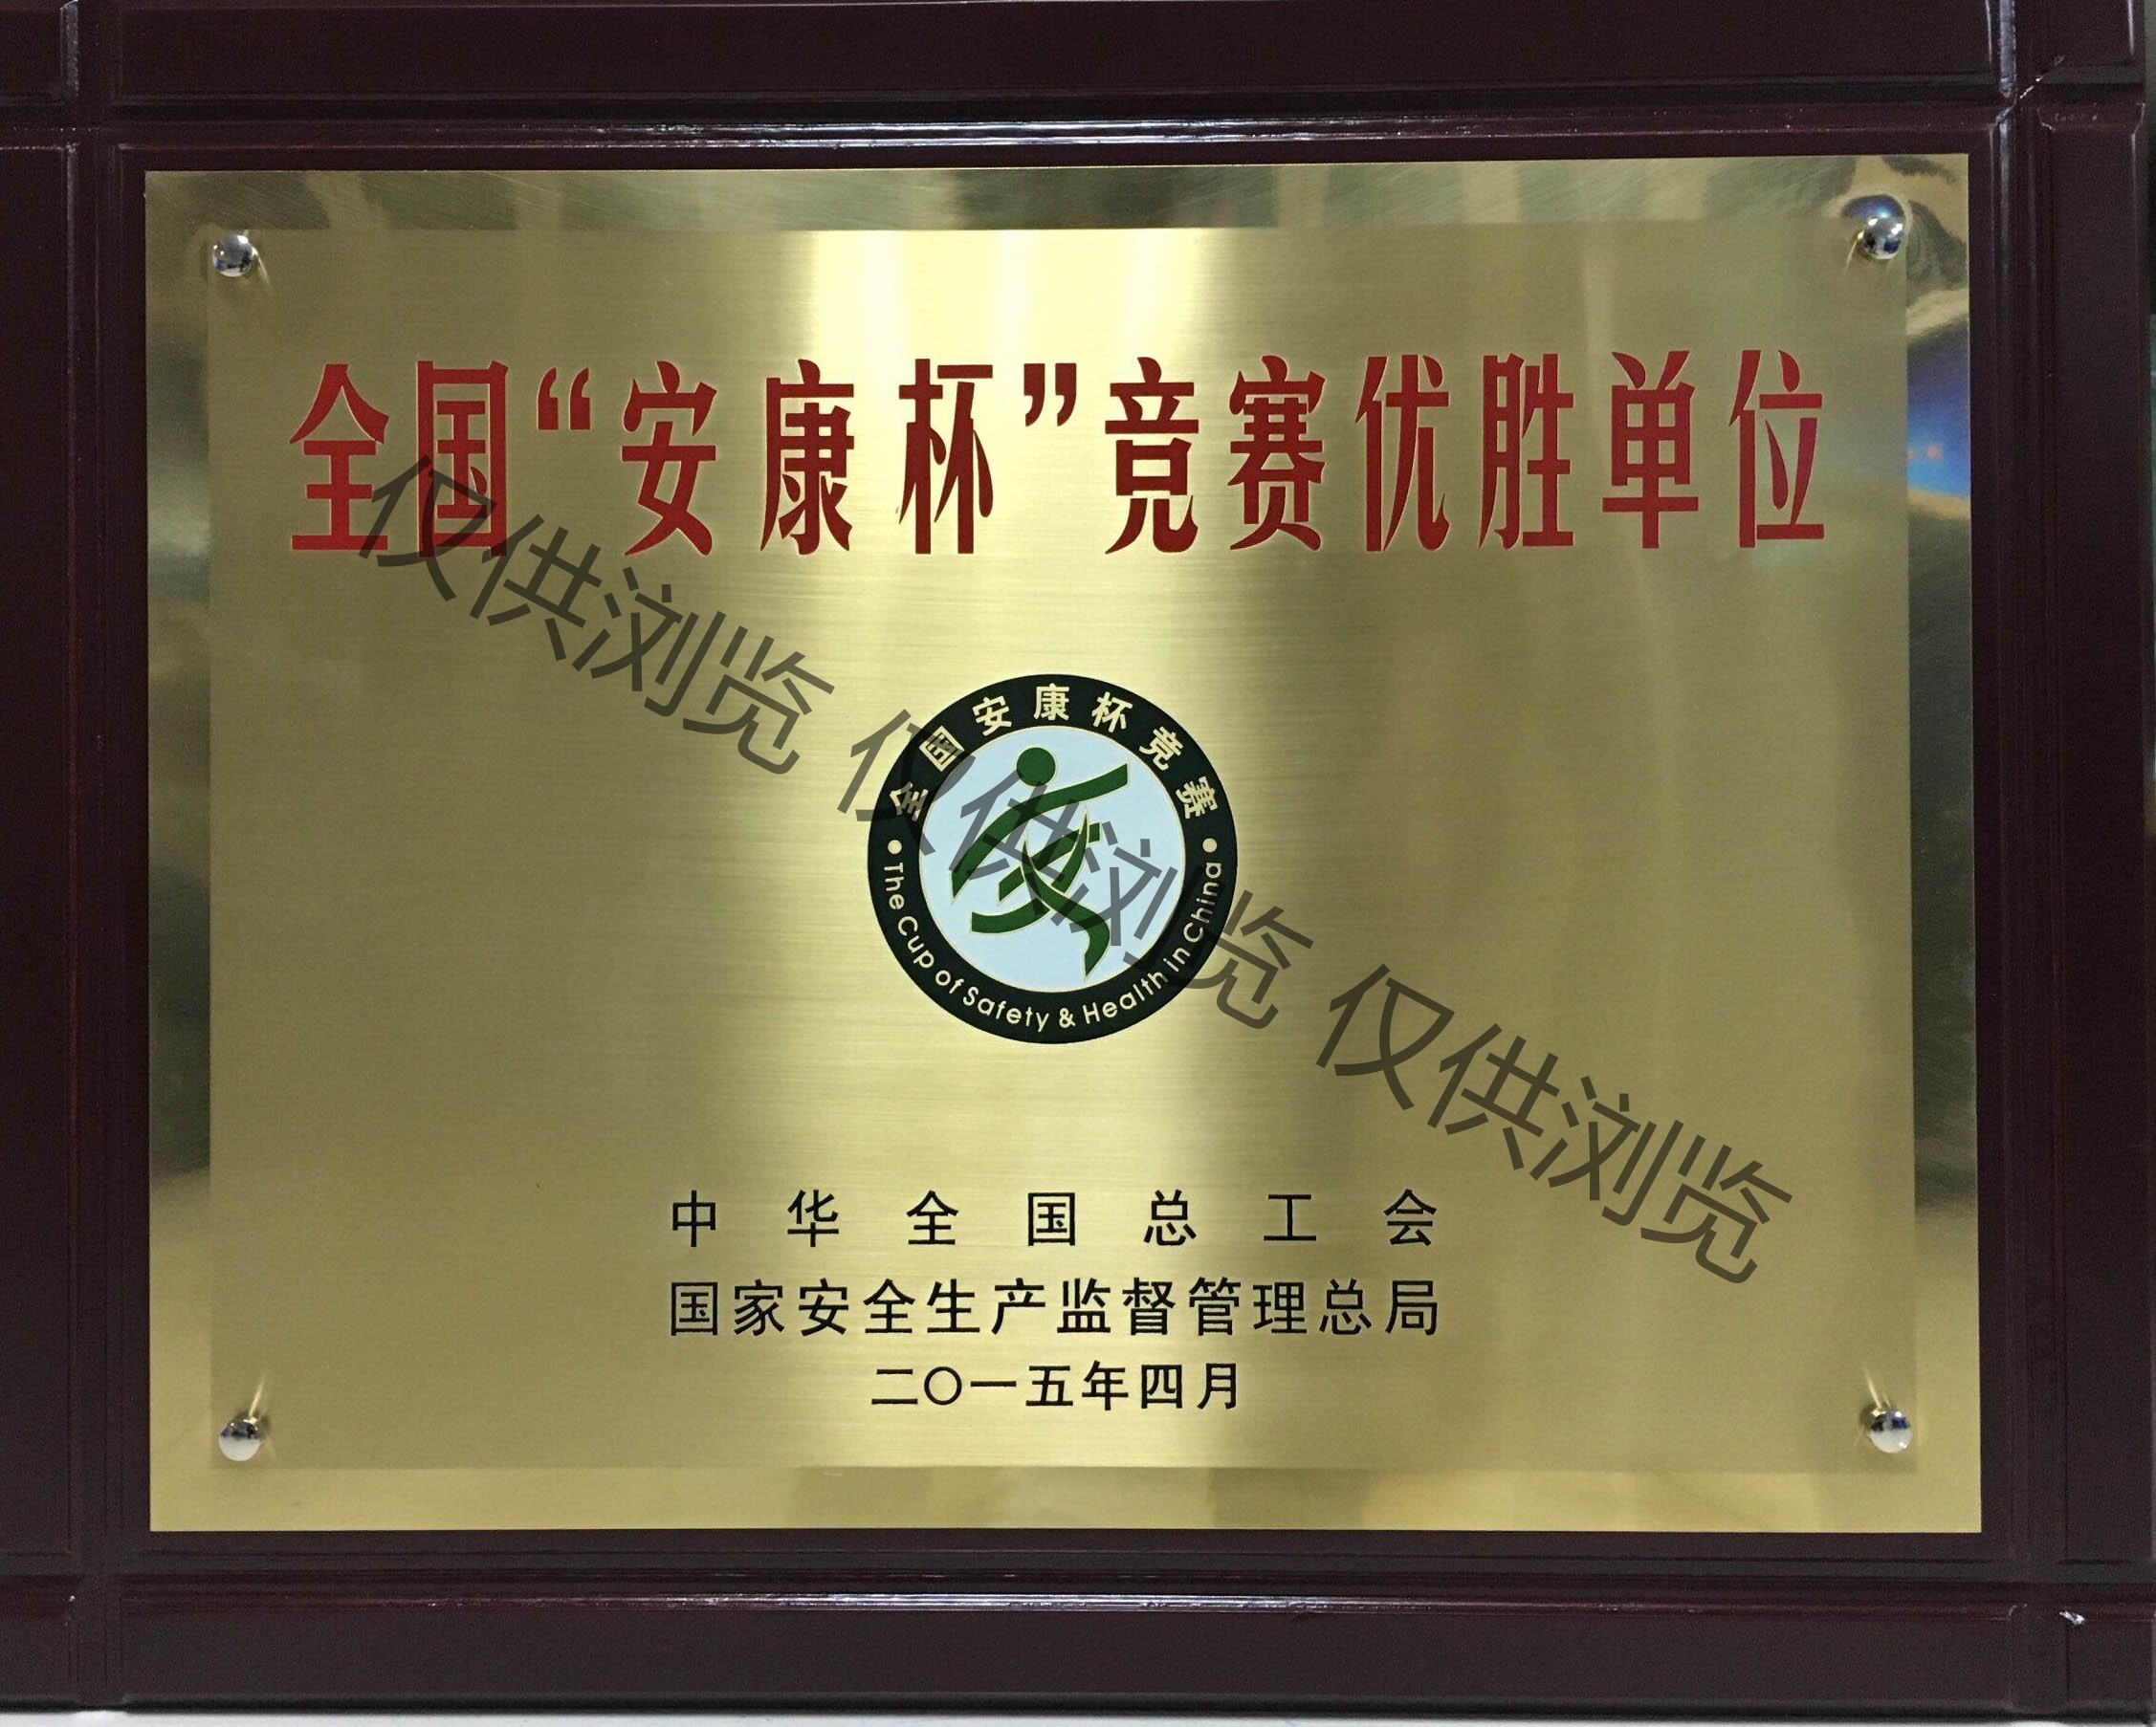 八桂获2014年度全国“安康杯”优胜单位牌匾